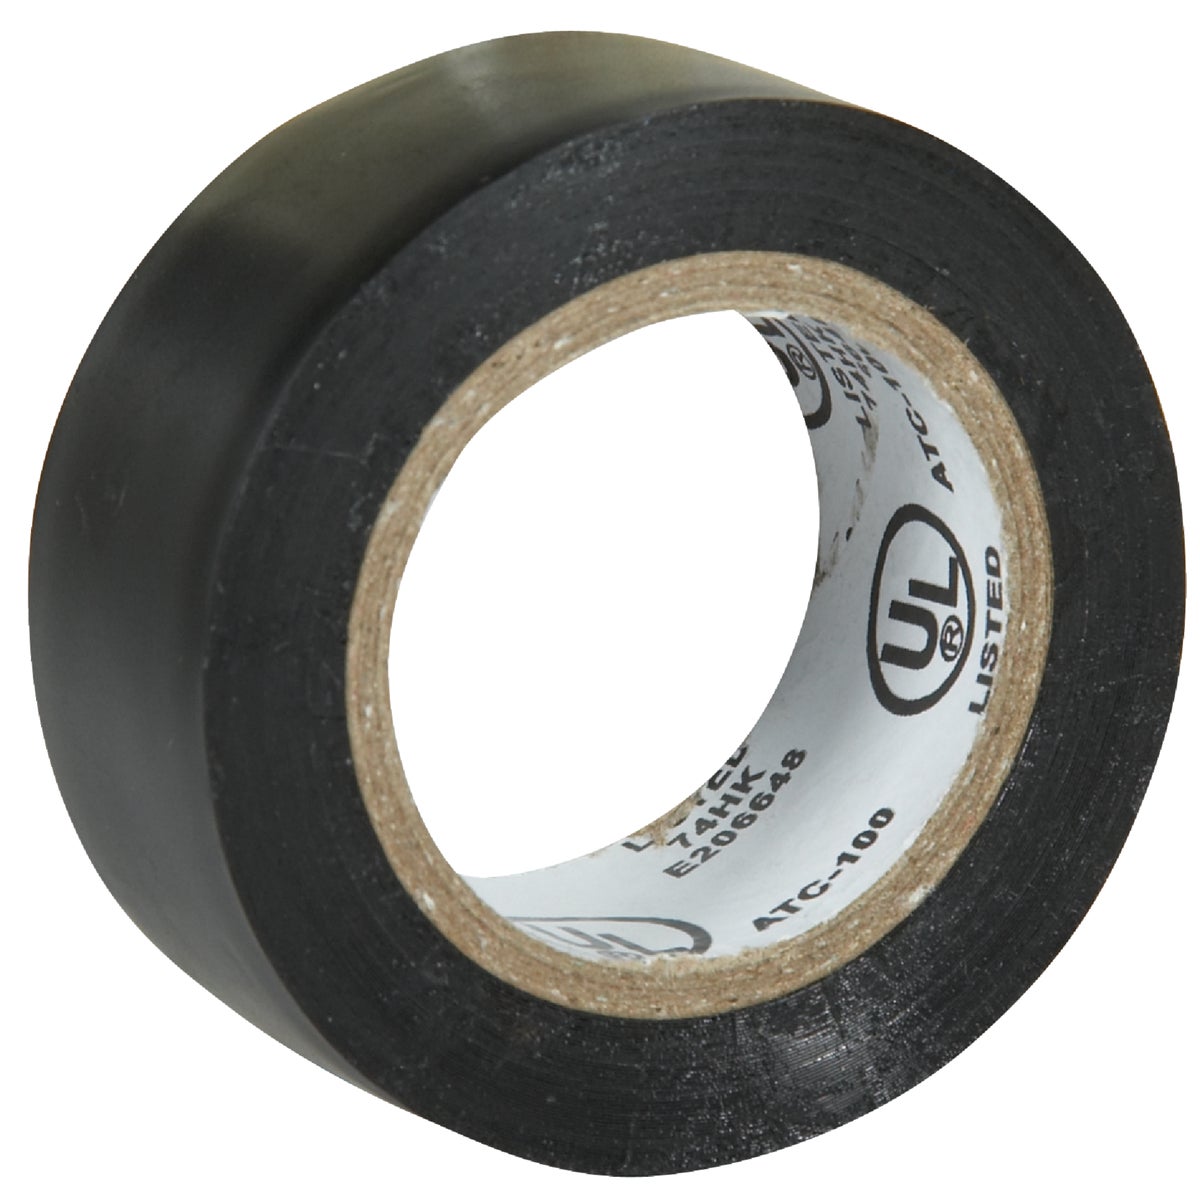 Item 502129, General purpose vinyl electrical tape.